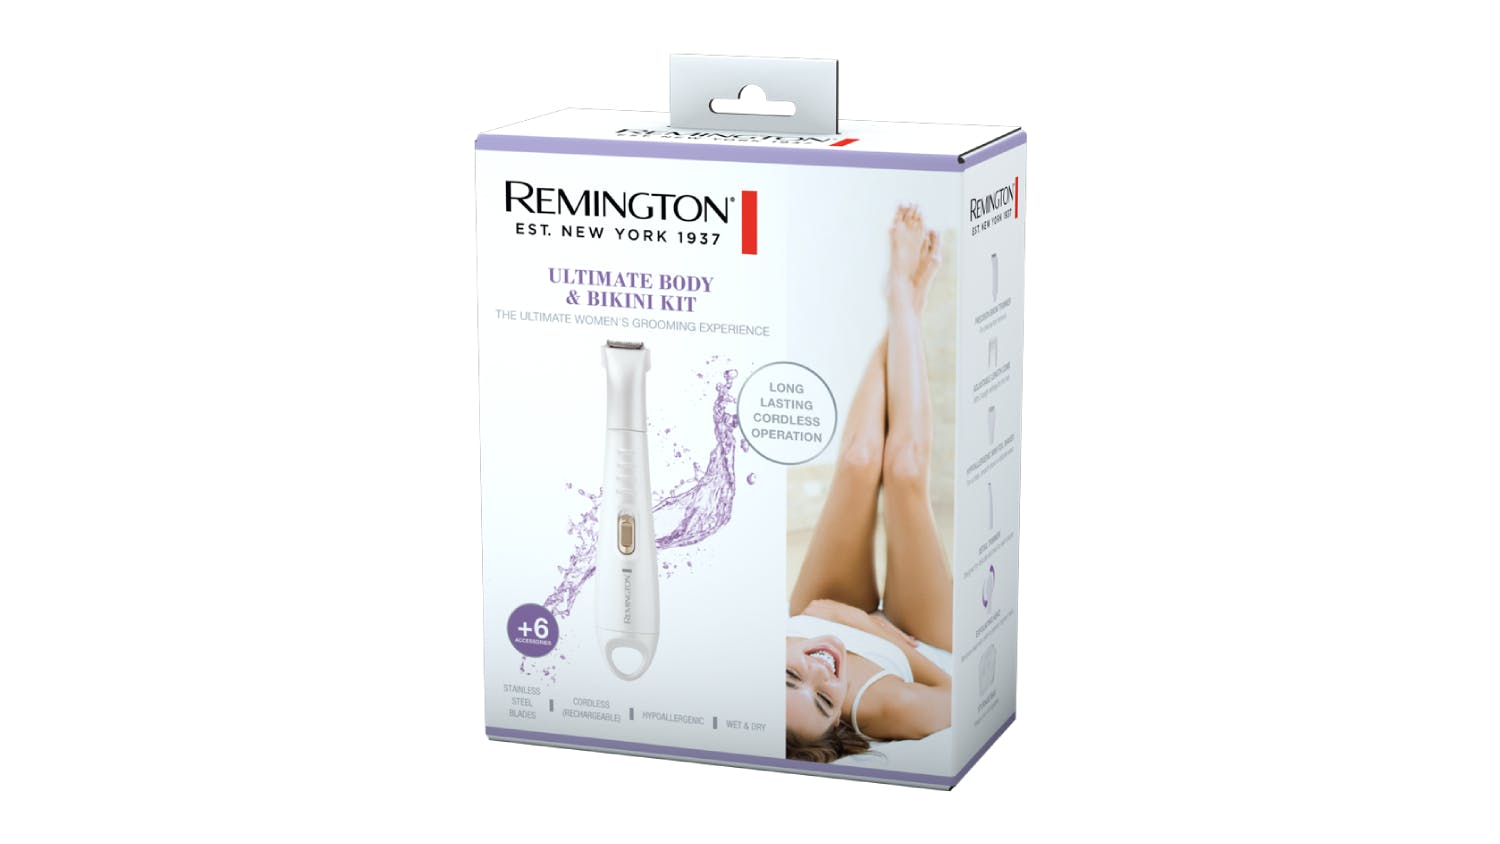 Remington Trim & Shape Ultimate Body & Bikini Kit